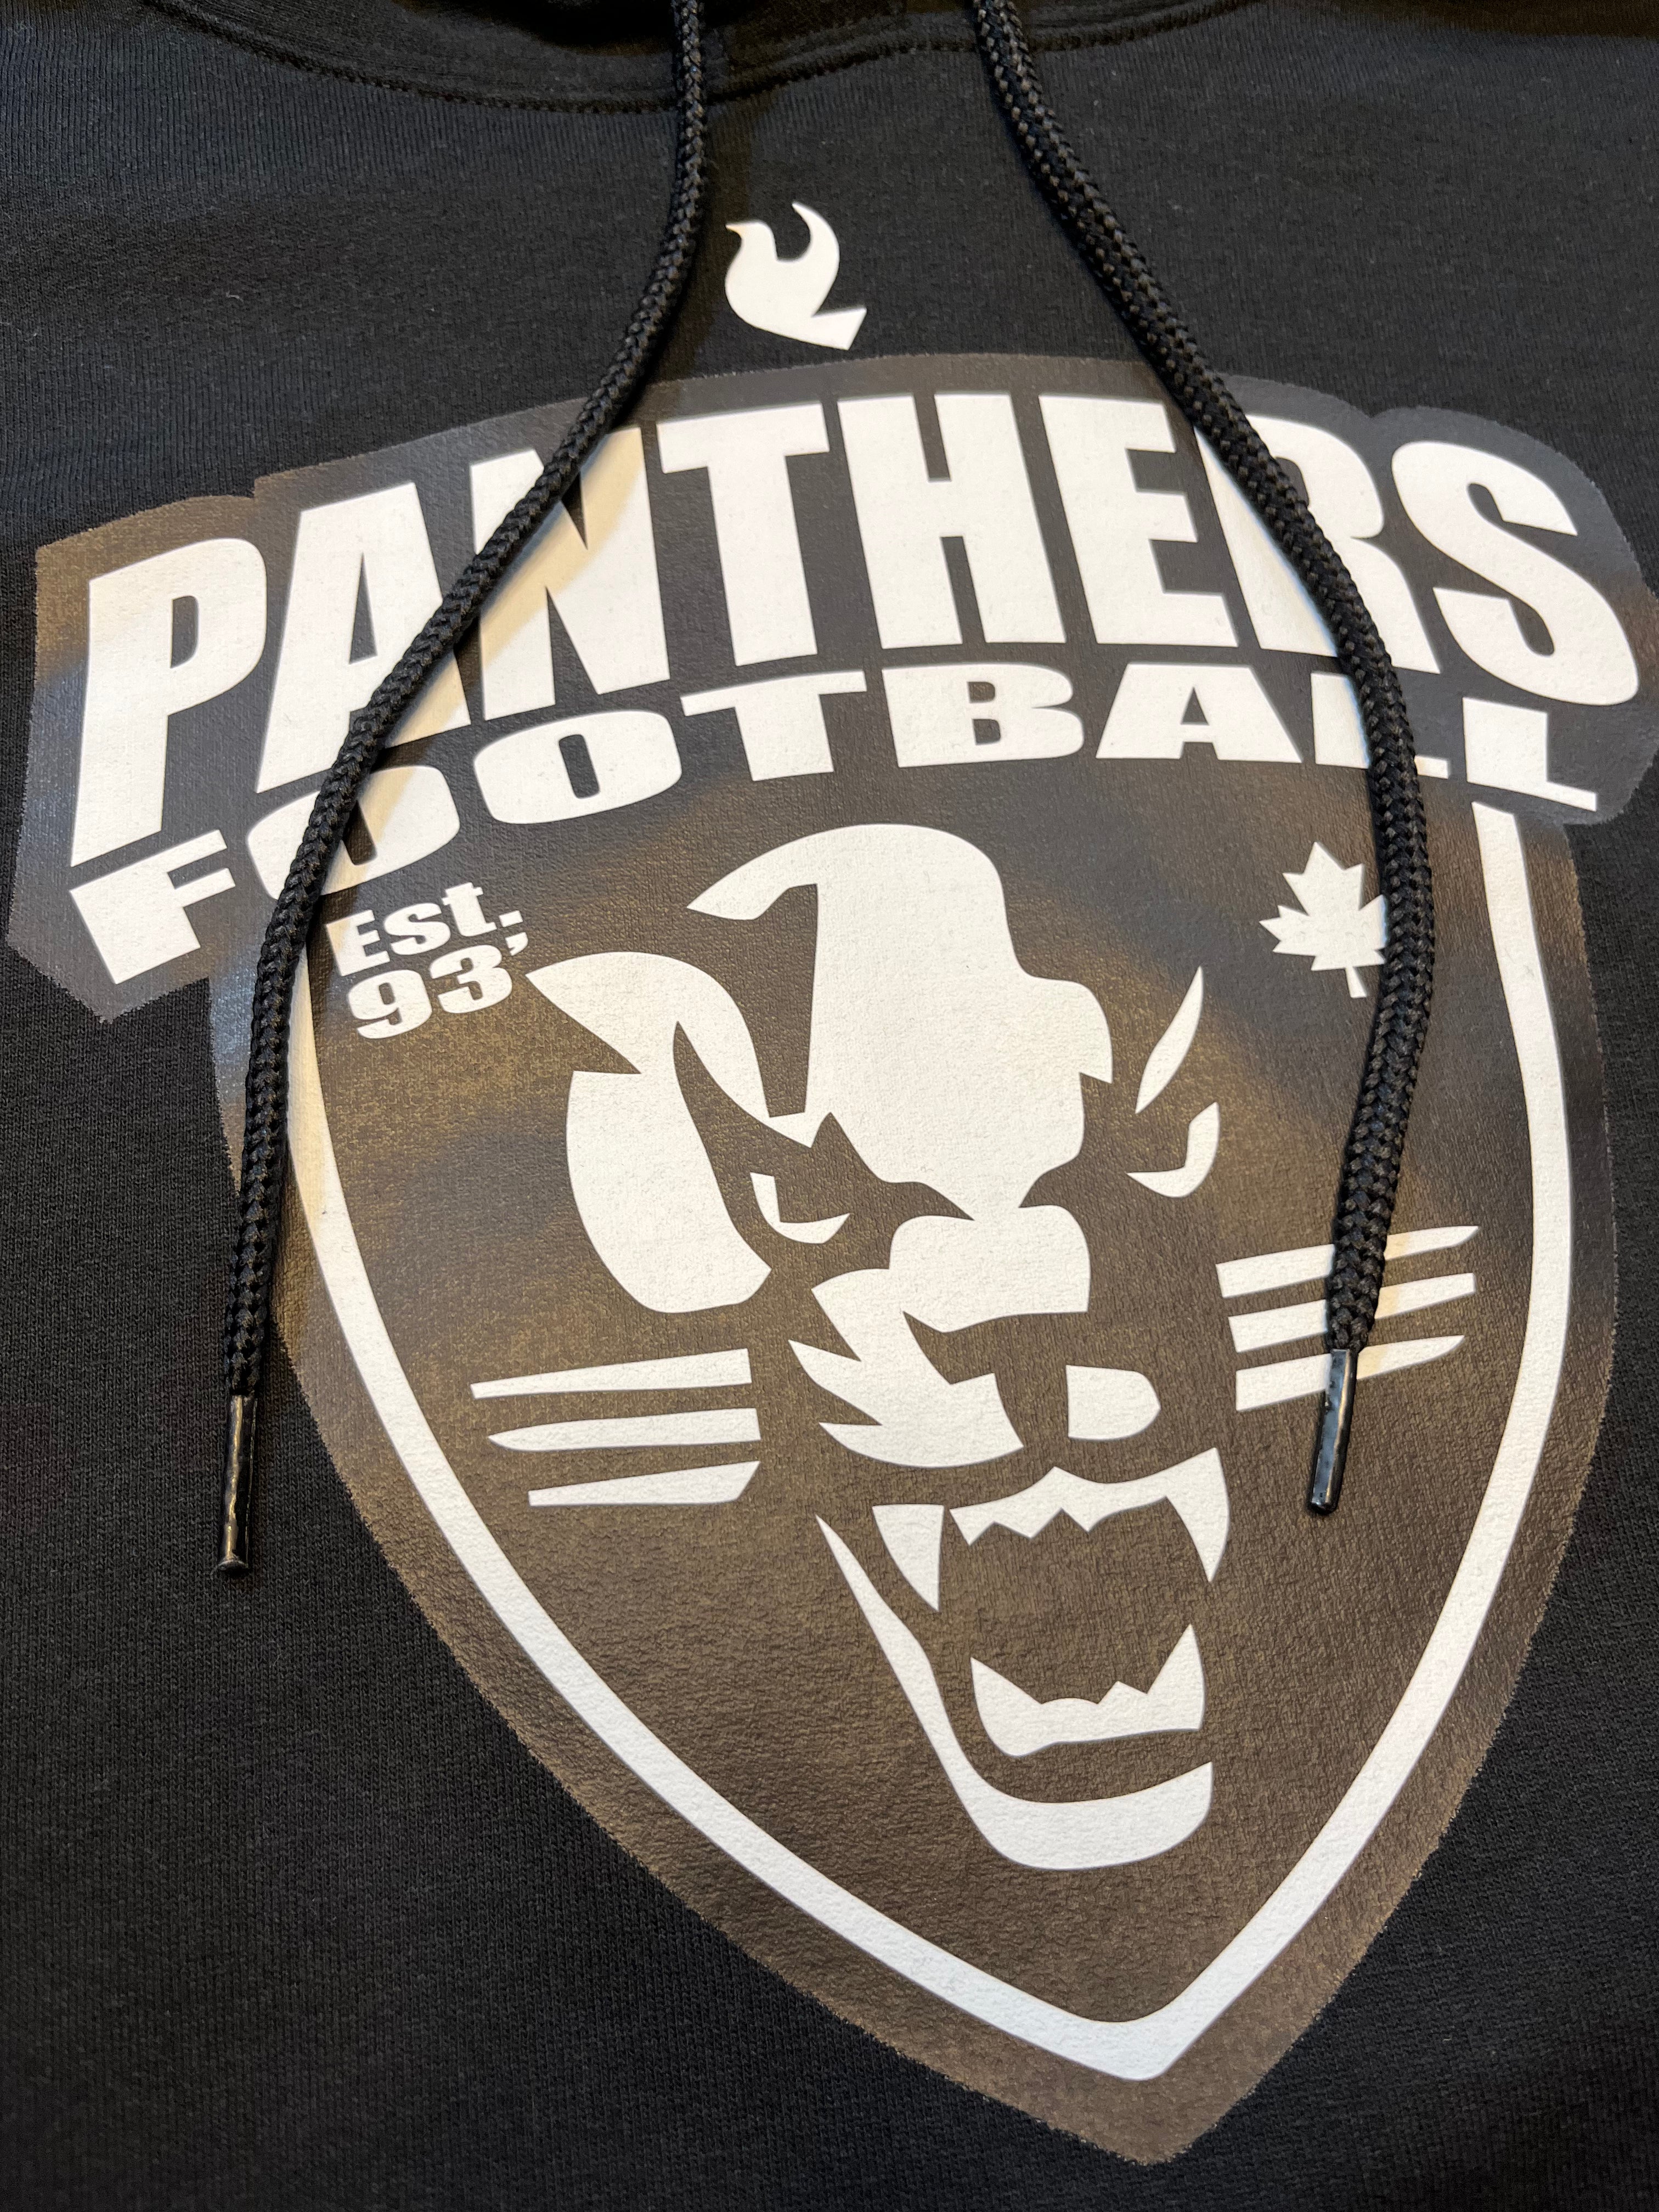 Panthers Est. 93&